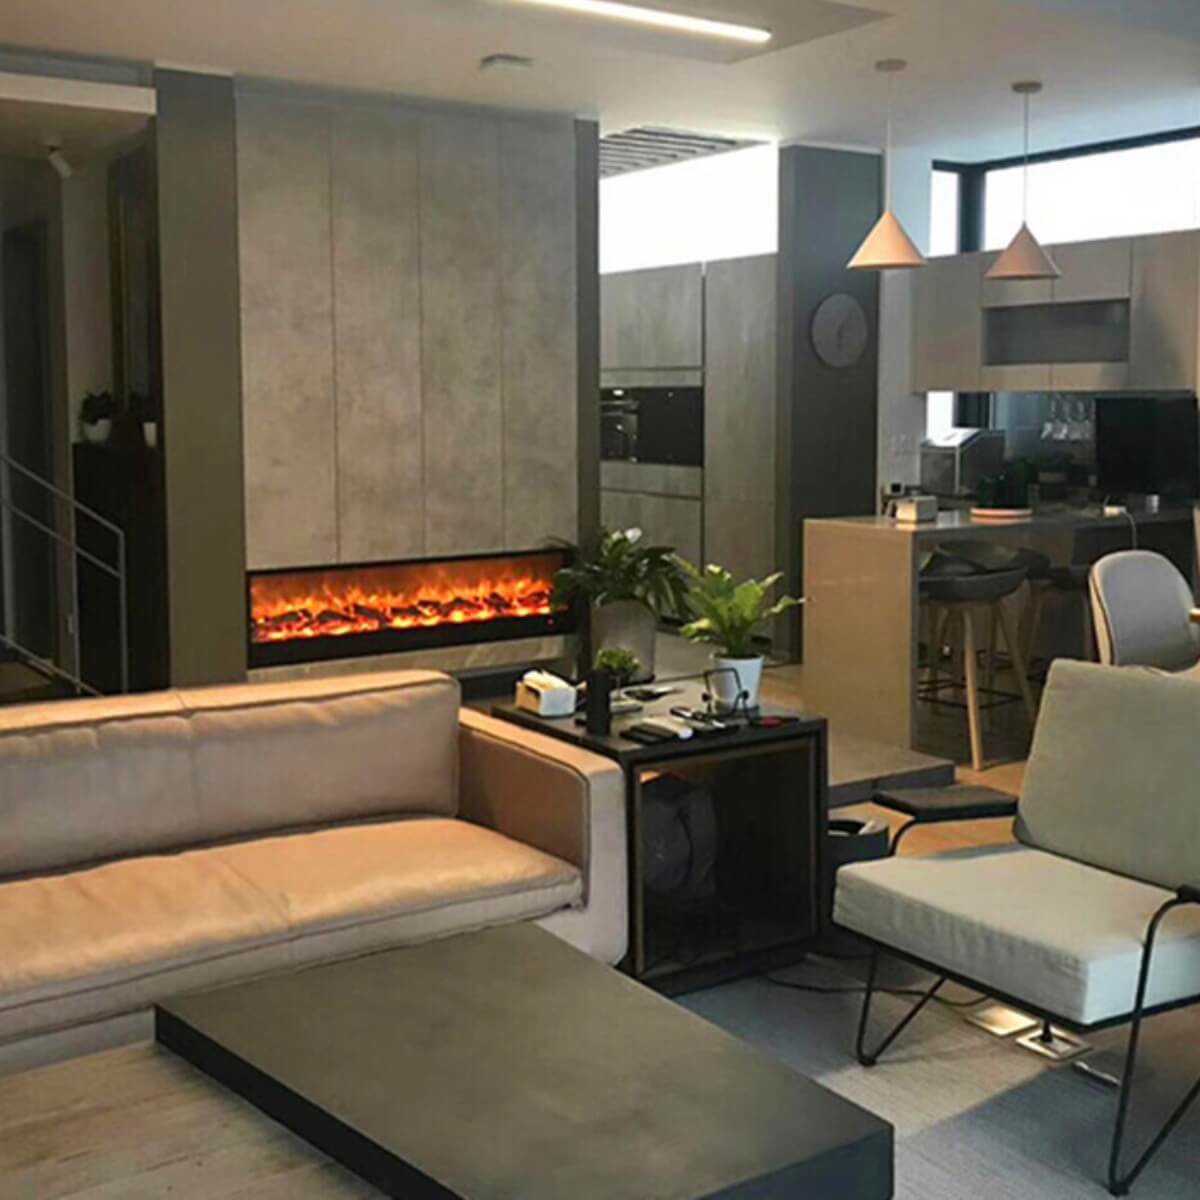 EC1500-fireplace-elegant-interior-4